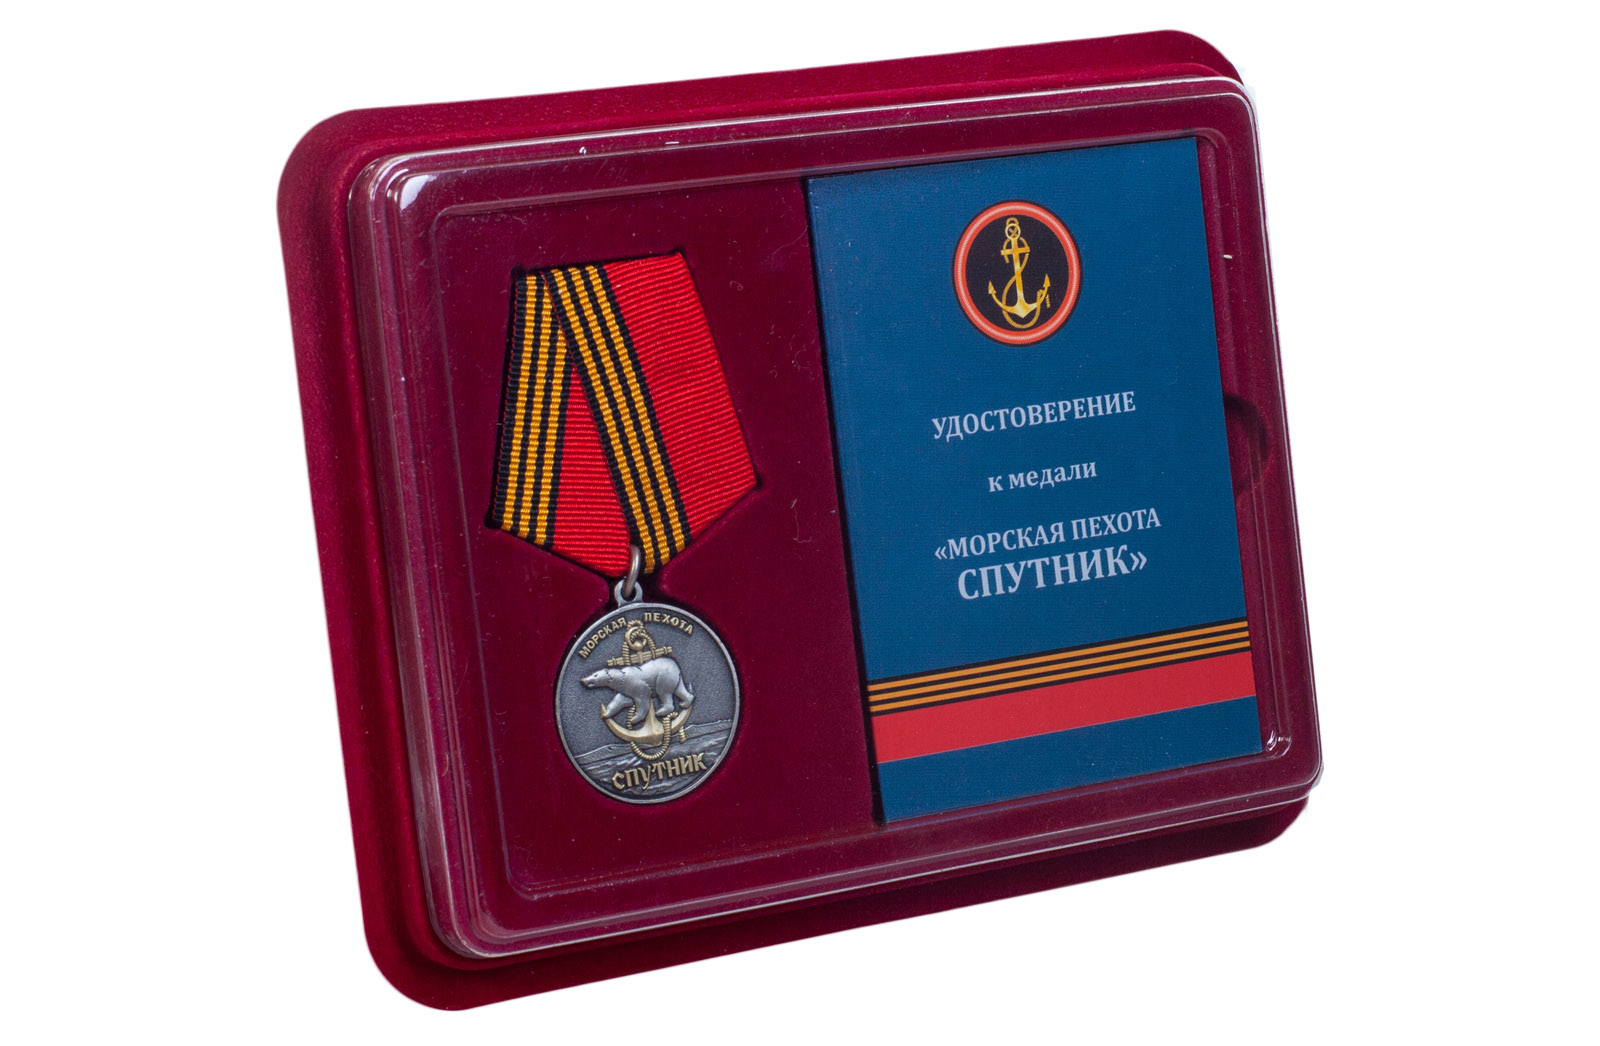 Наградная медаль "61-я Киркенесская ОБрМП. Спутник" 